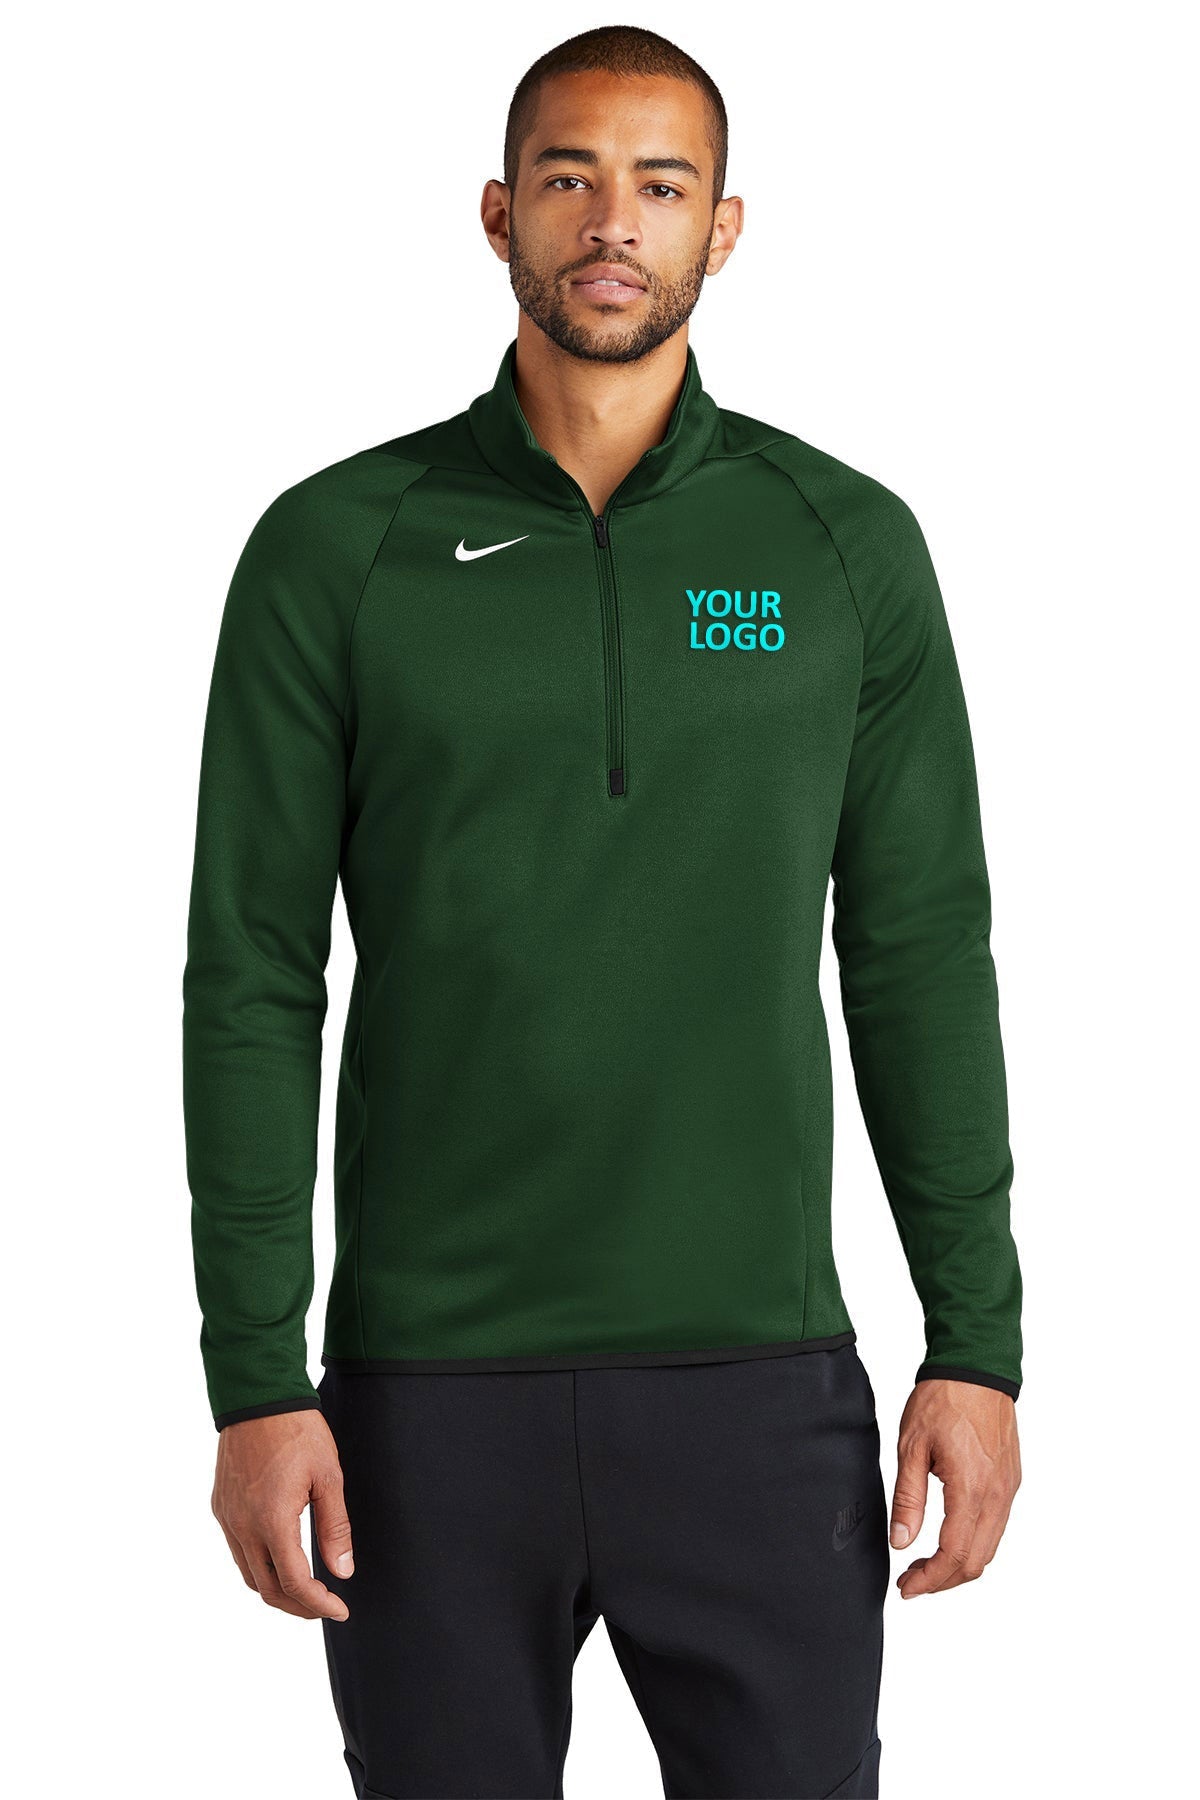 Nike Team Dark Green CN9492 company logo jackets